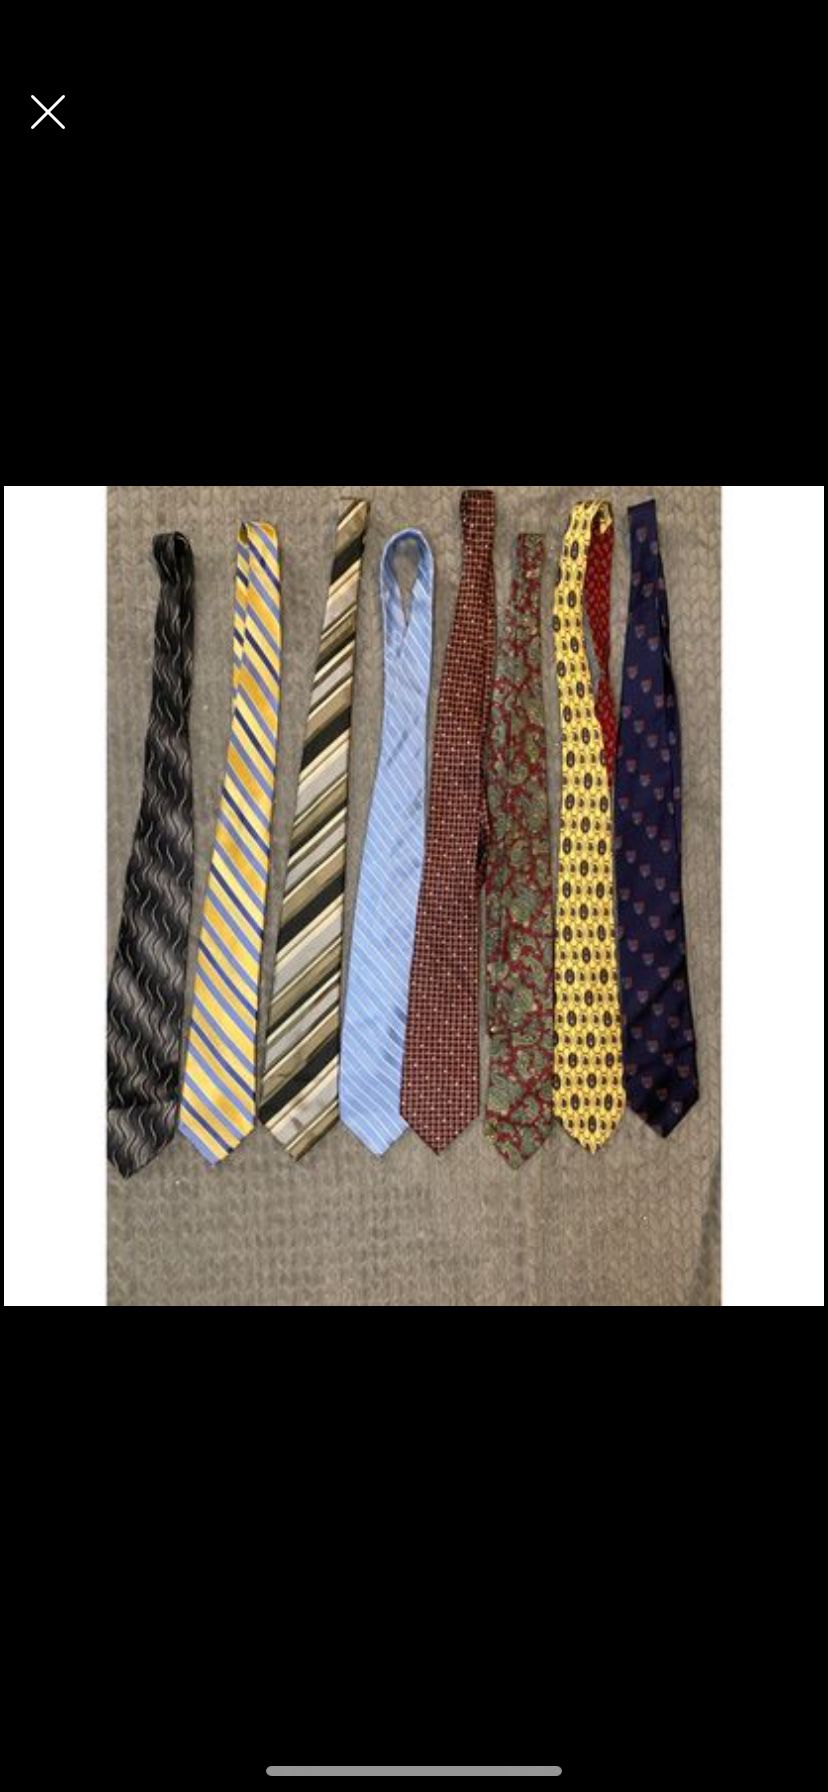 Men's Luxury Tie Bundle, 7 Quality Name Brand Ties, Tommy Hilfiger, Gant, Van Heusen